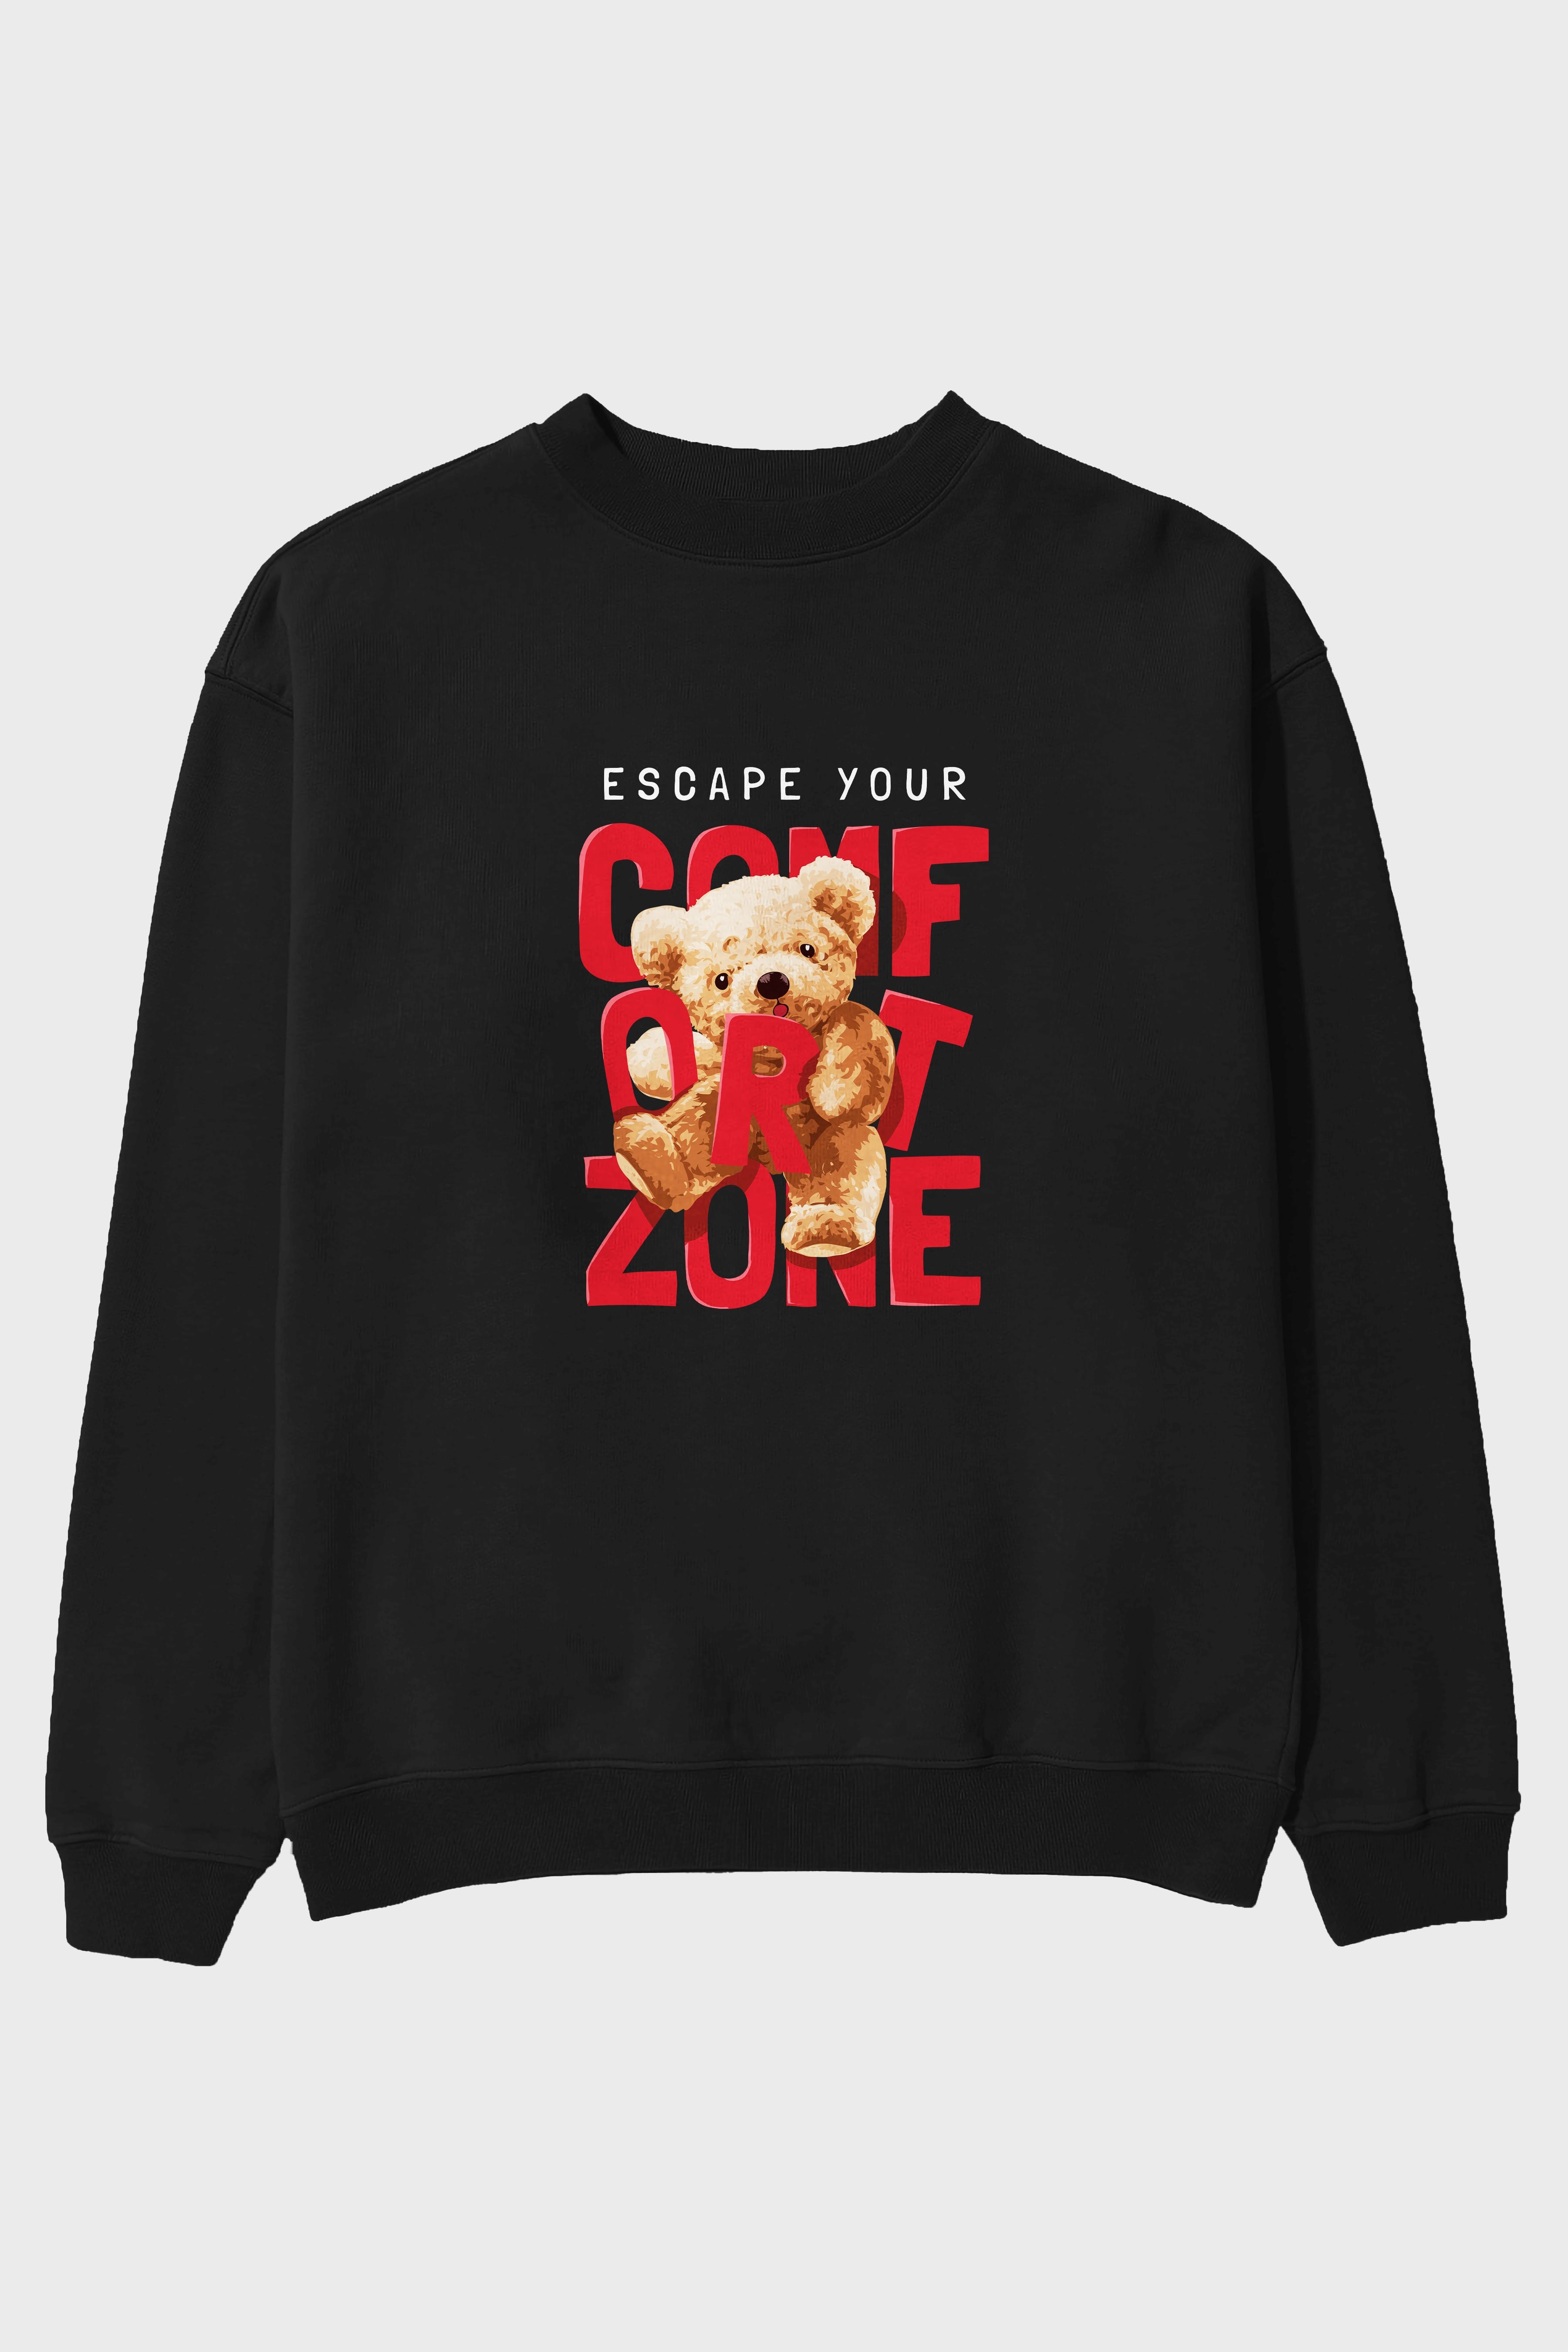 Teddy Bear Escape Comfort Zone Ön Baskılı Oversize Sweatshirt Erkek Kadın Unisex